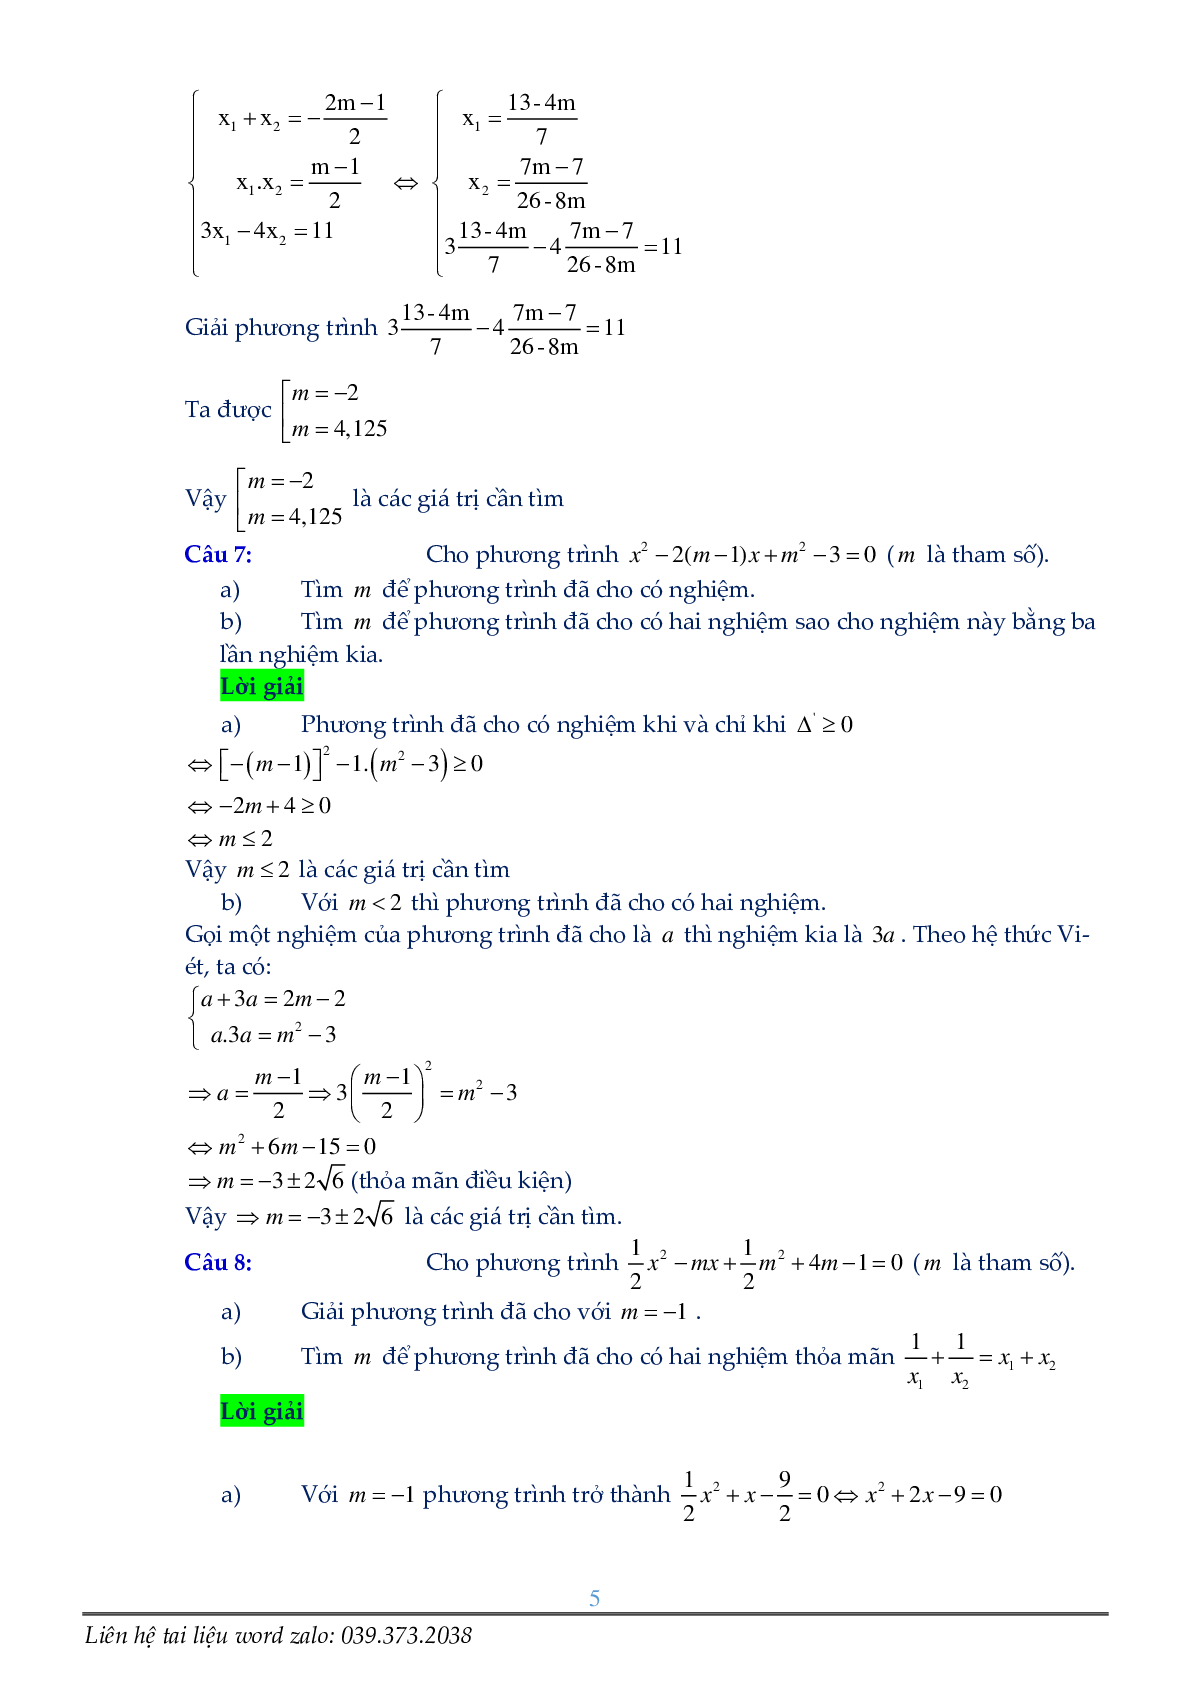 Phương trình chứa tham số (trang 5)